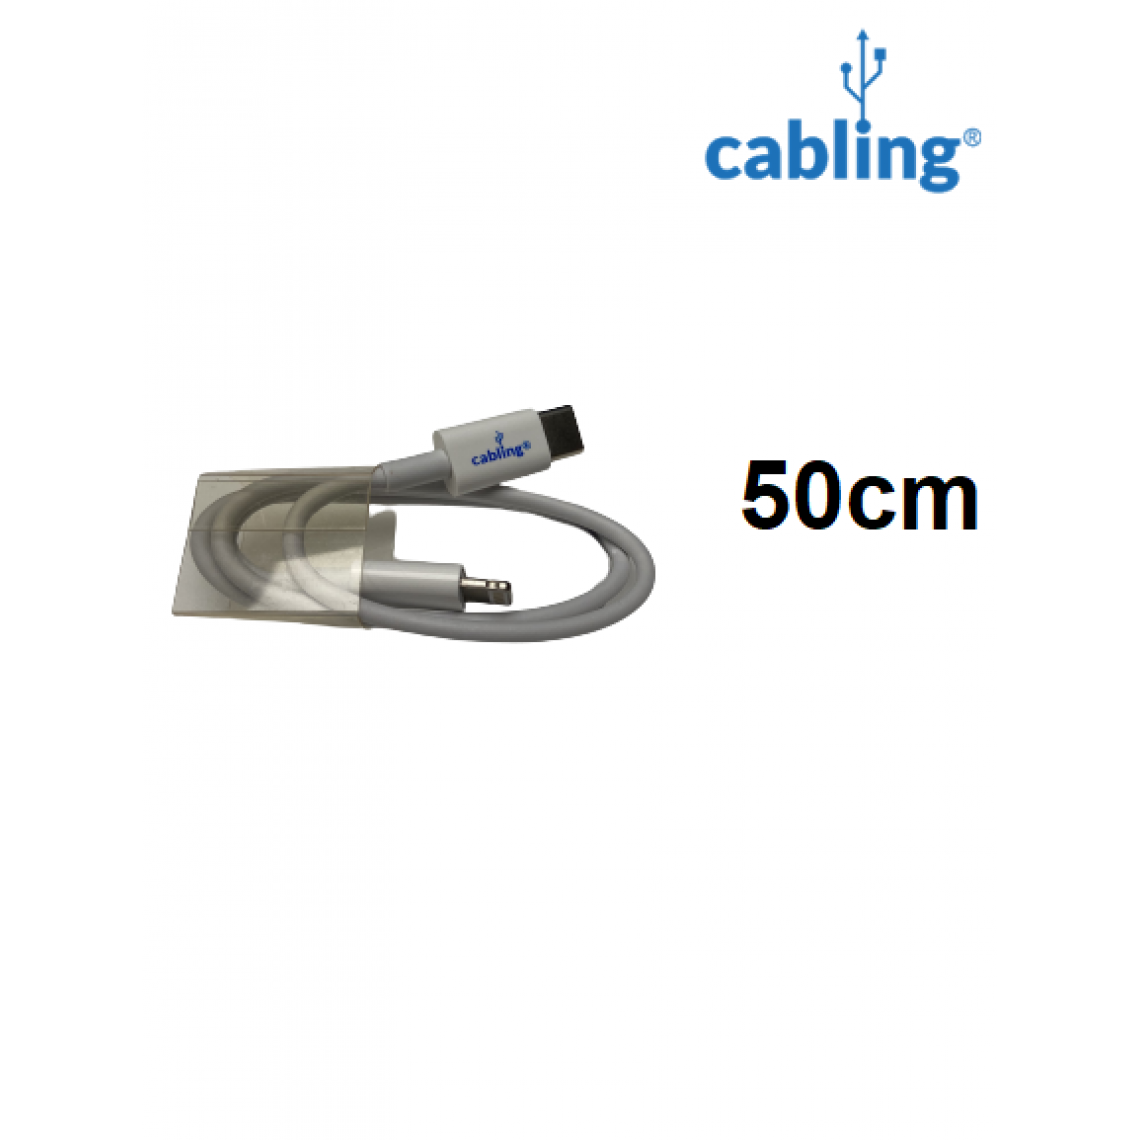 Cabling - CABLING® Câble USB C vers Lightning 0,5m Compatible avec iPhone 12 Mini 12 Pro 12 Pro Max Se 2020 11 Pro Max XR XS XS Max 8 8 Plus 7 7 Plus iPad - Chargeur secteur téléphone